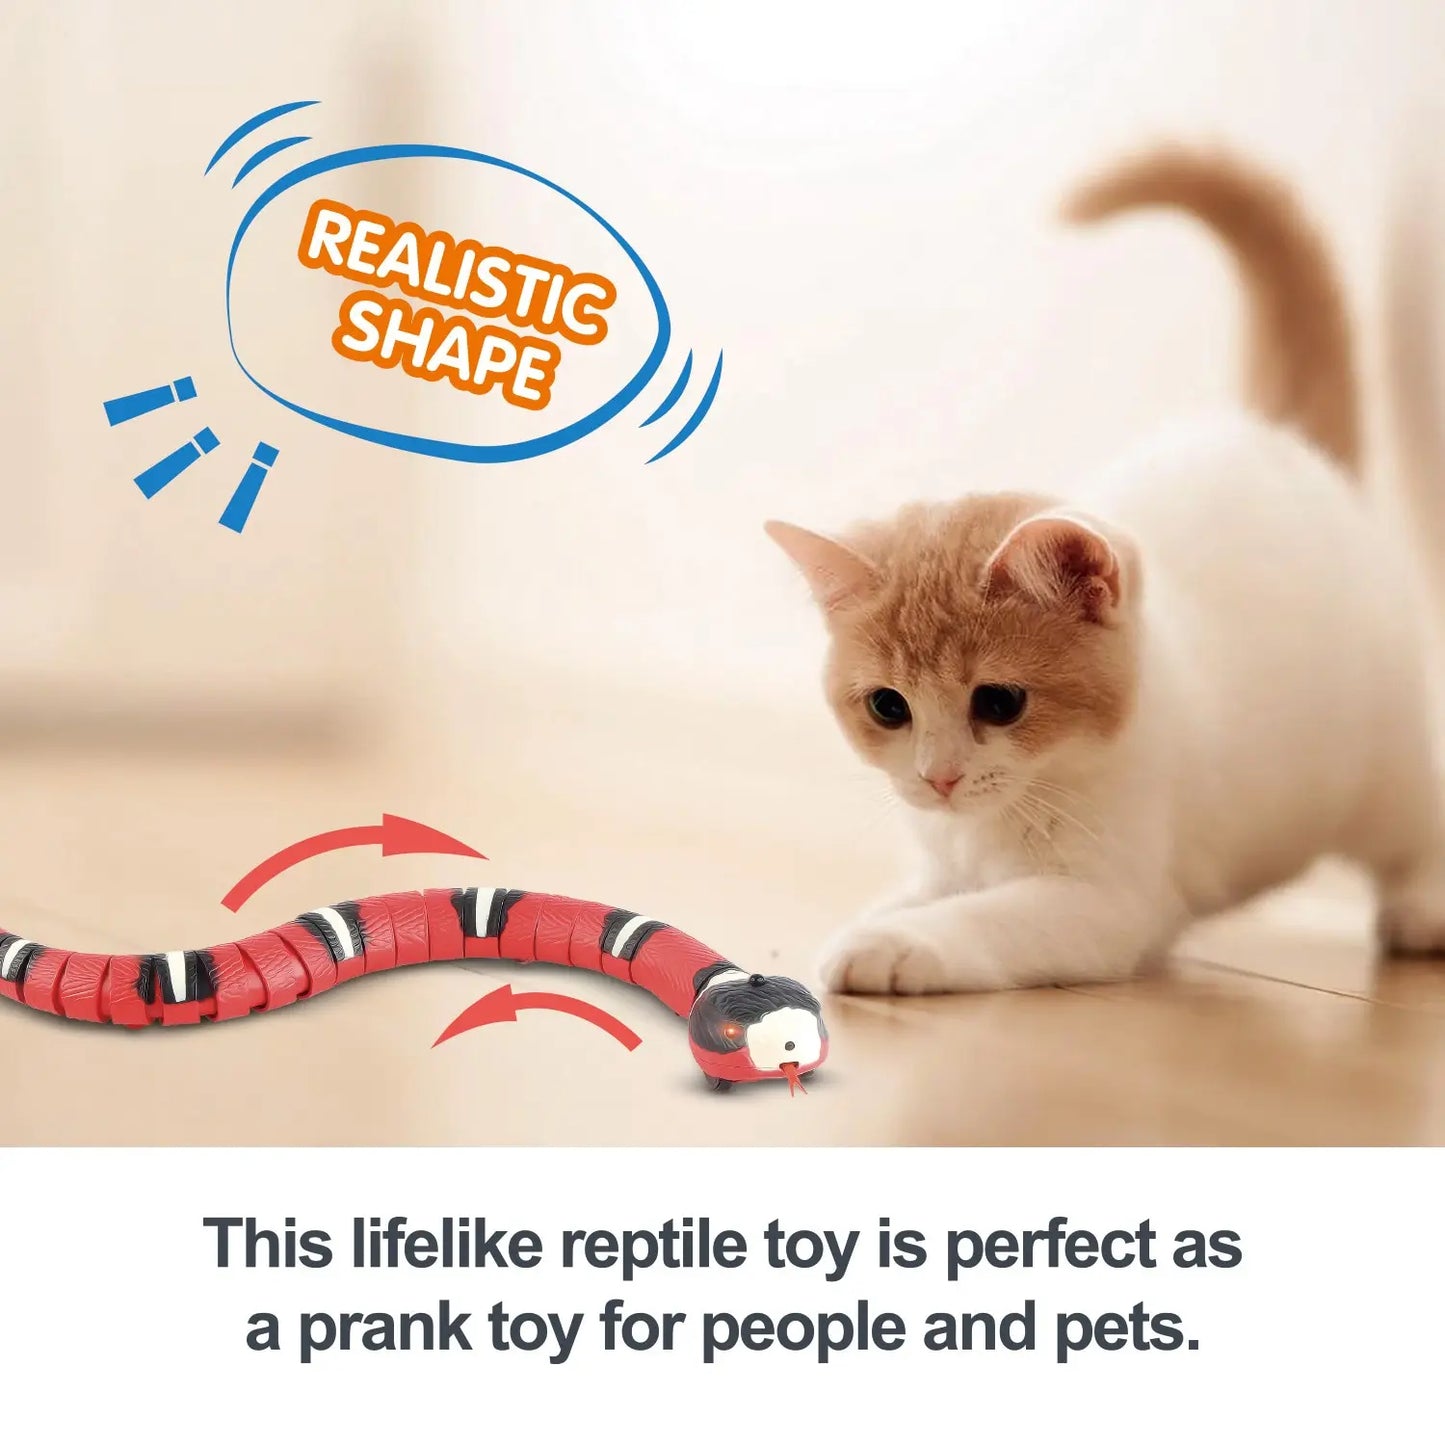 Smart Sensing Electronic Snake Cat Toy